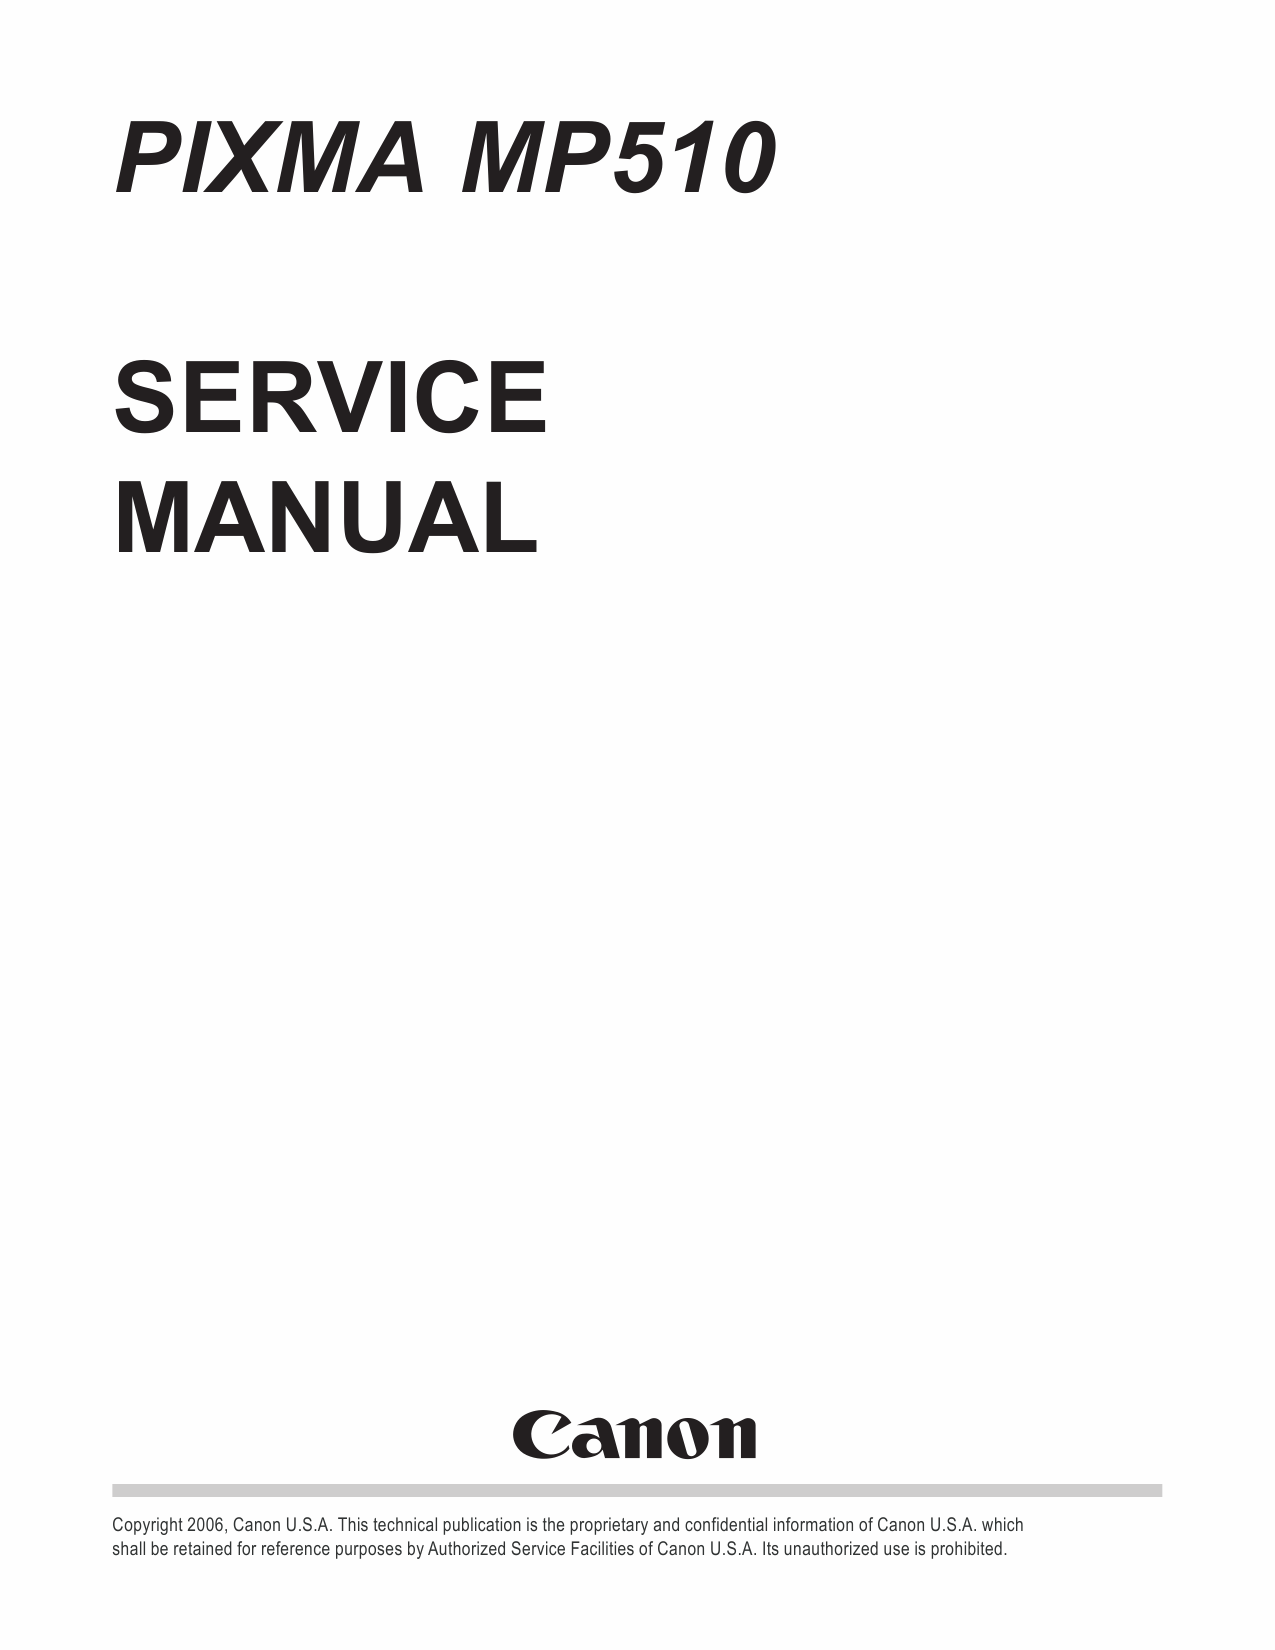 Canon PIXMA MP510 Service Manual-1